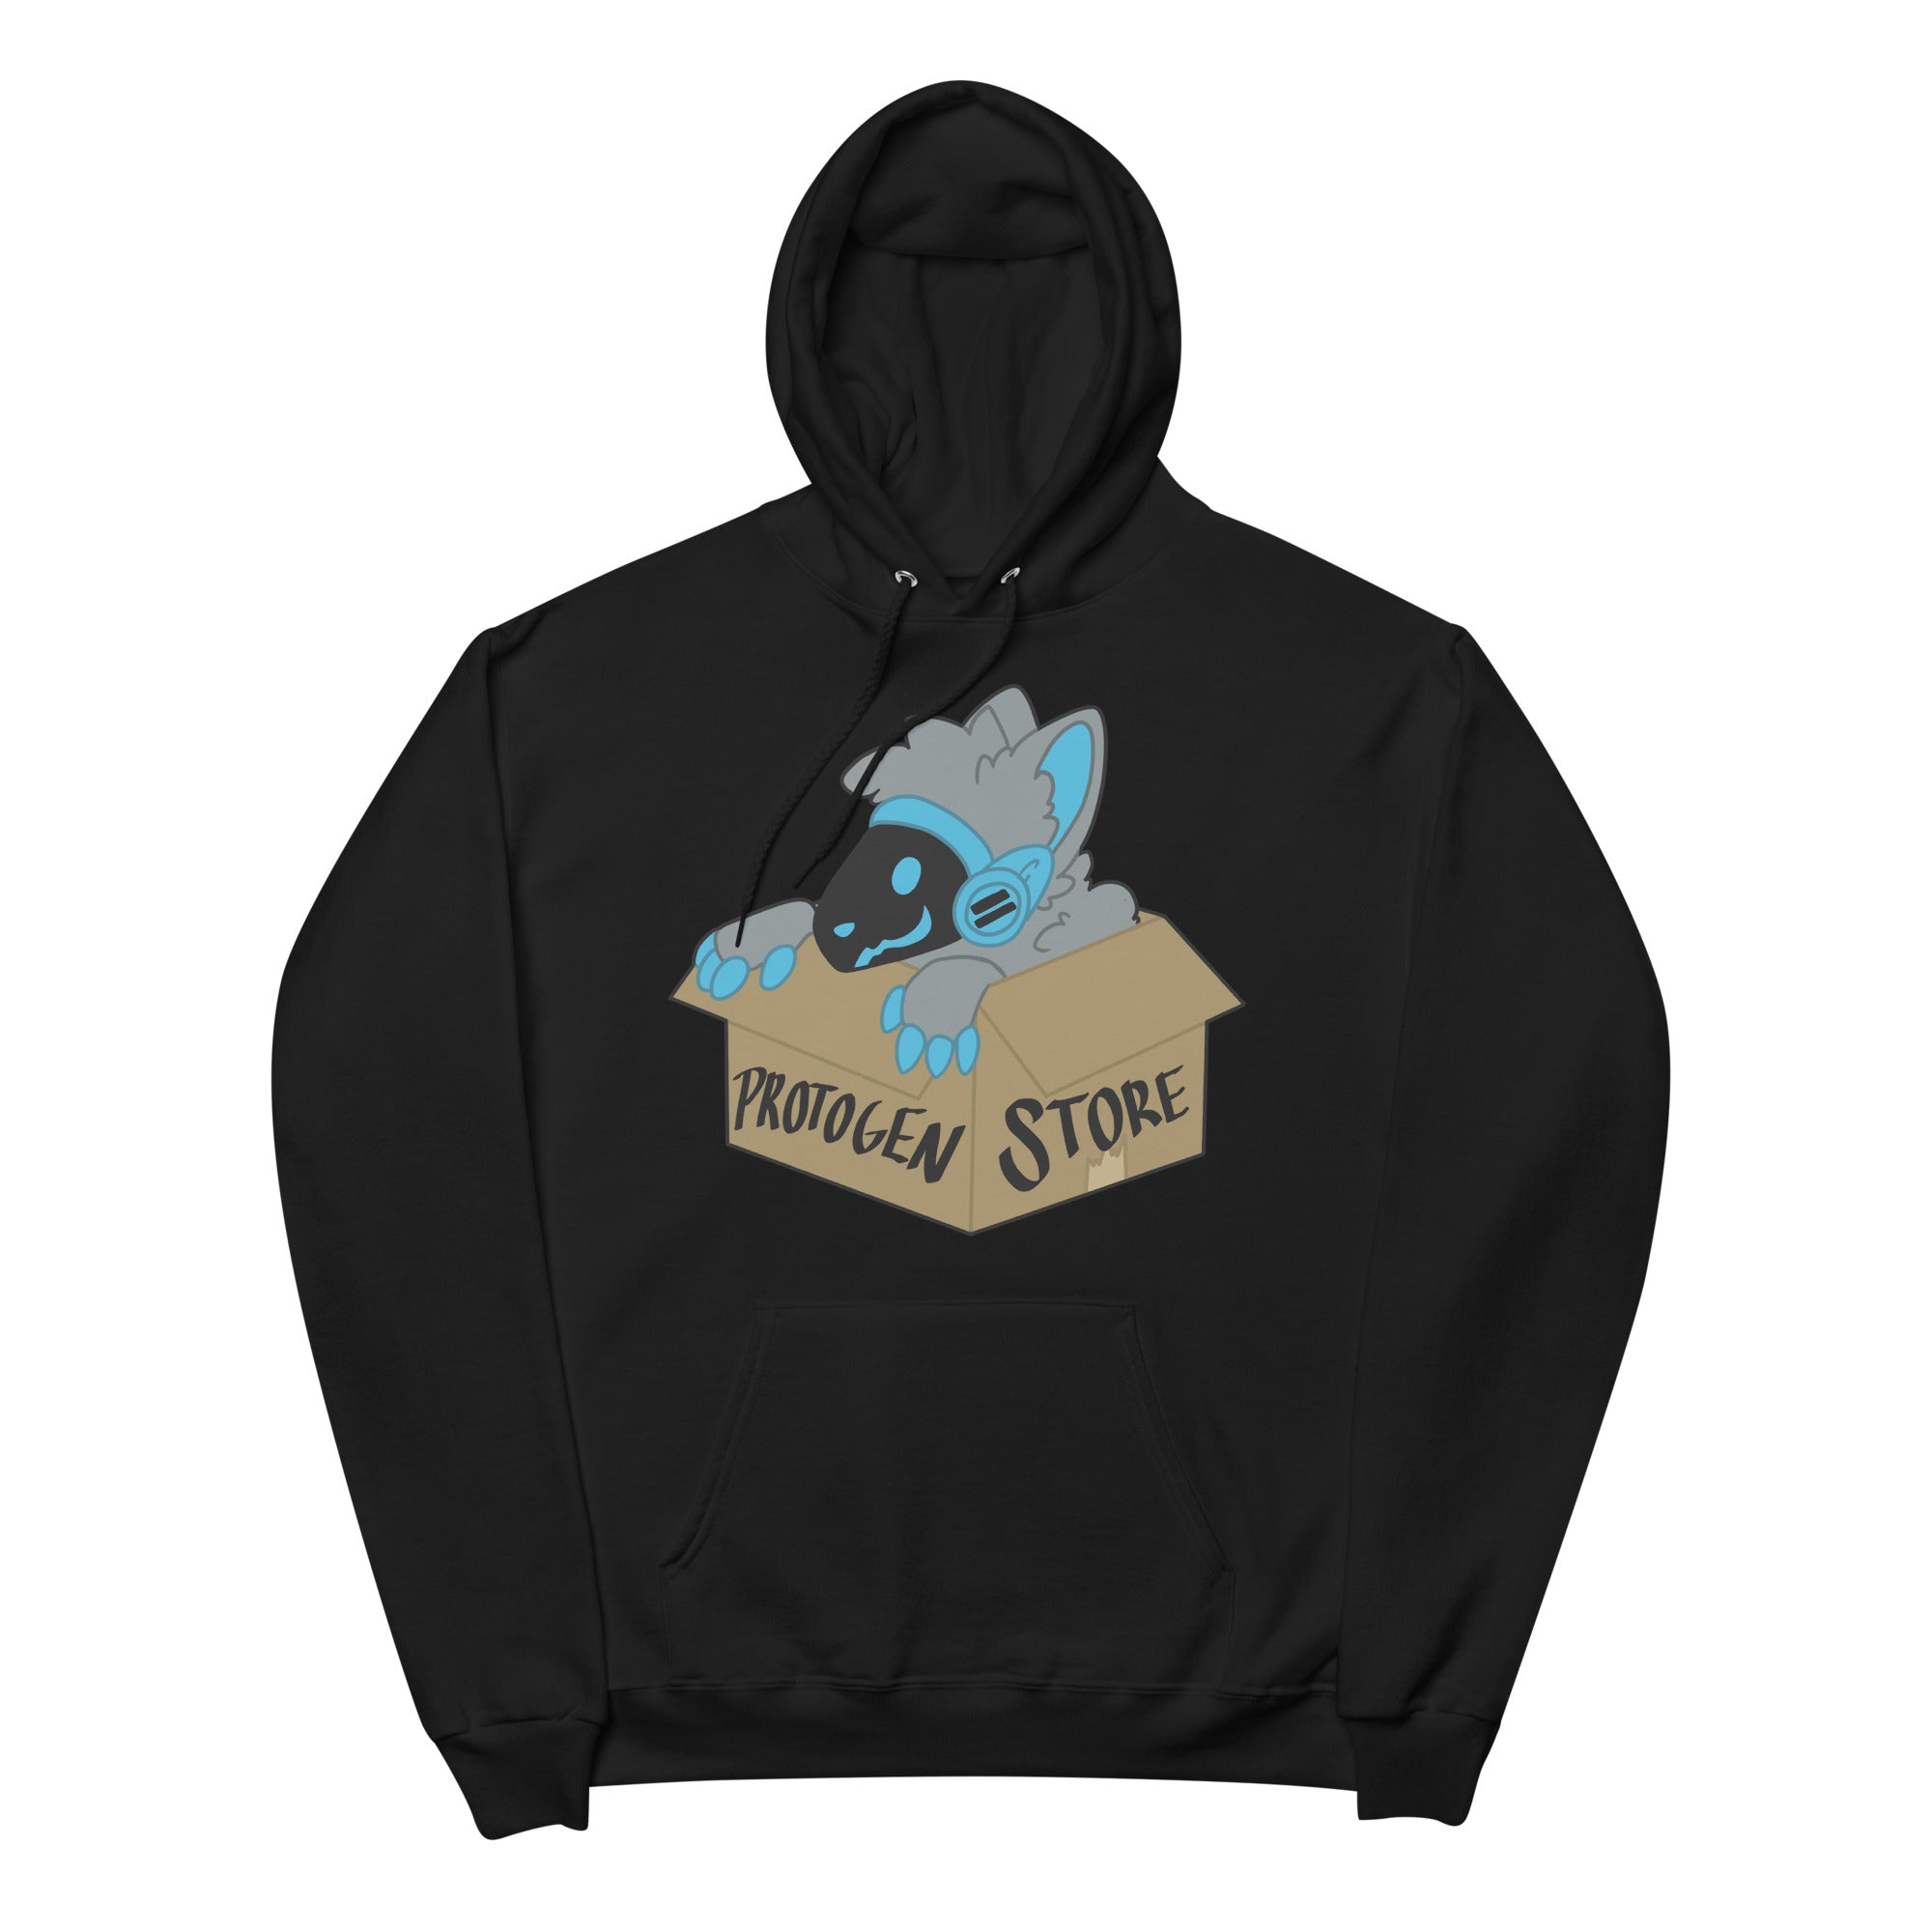 Protogen Store hoodie